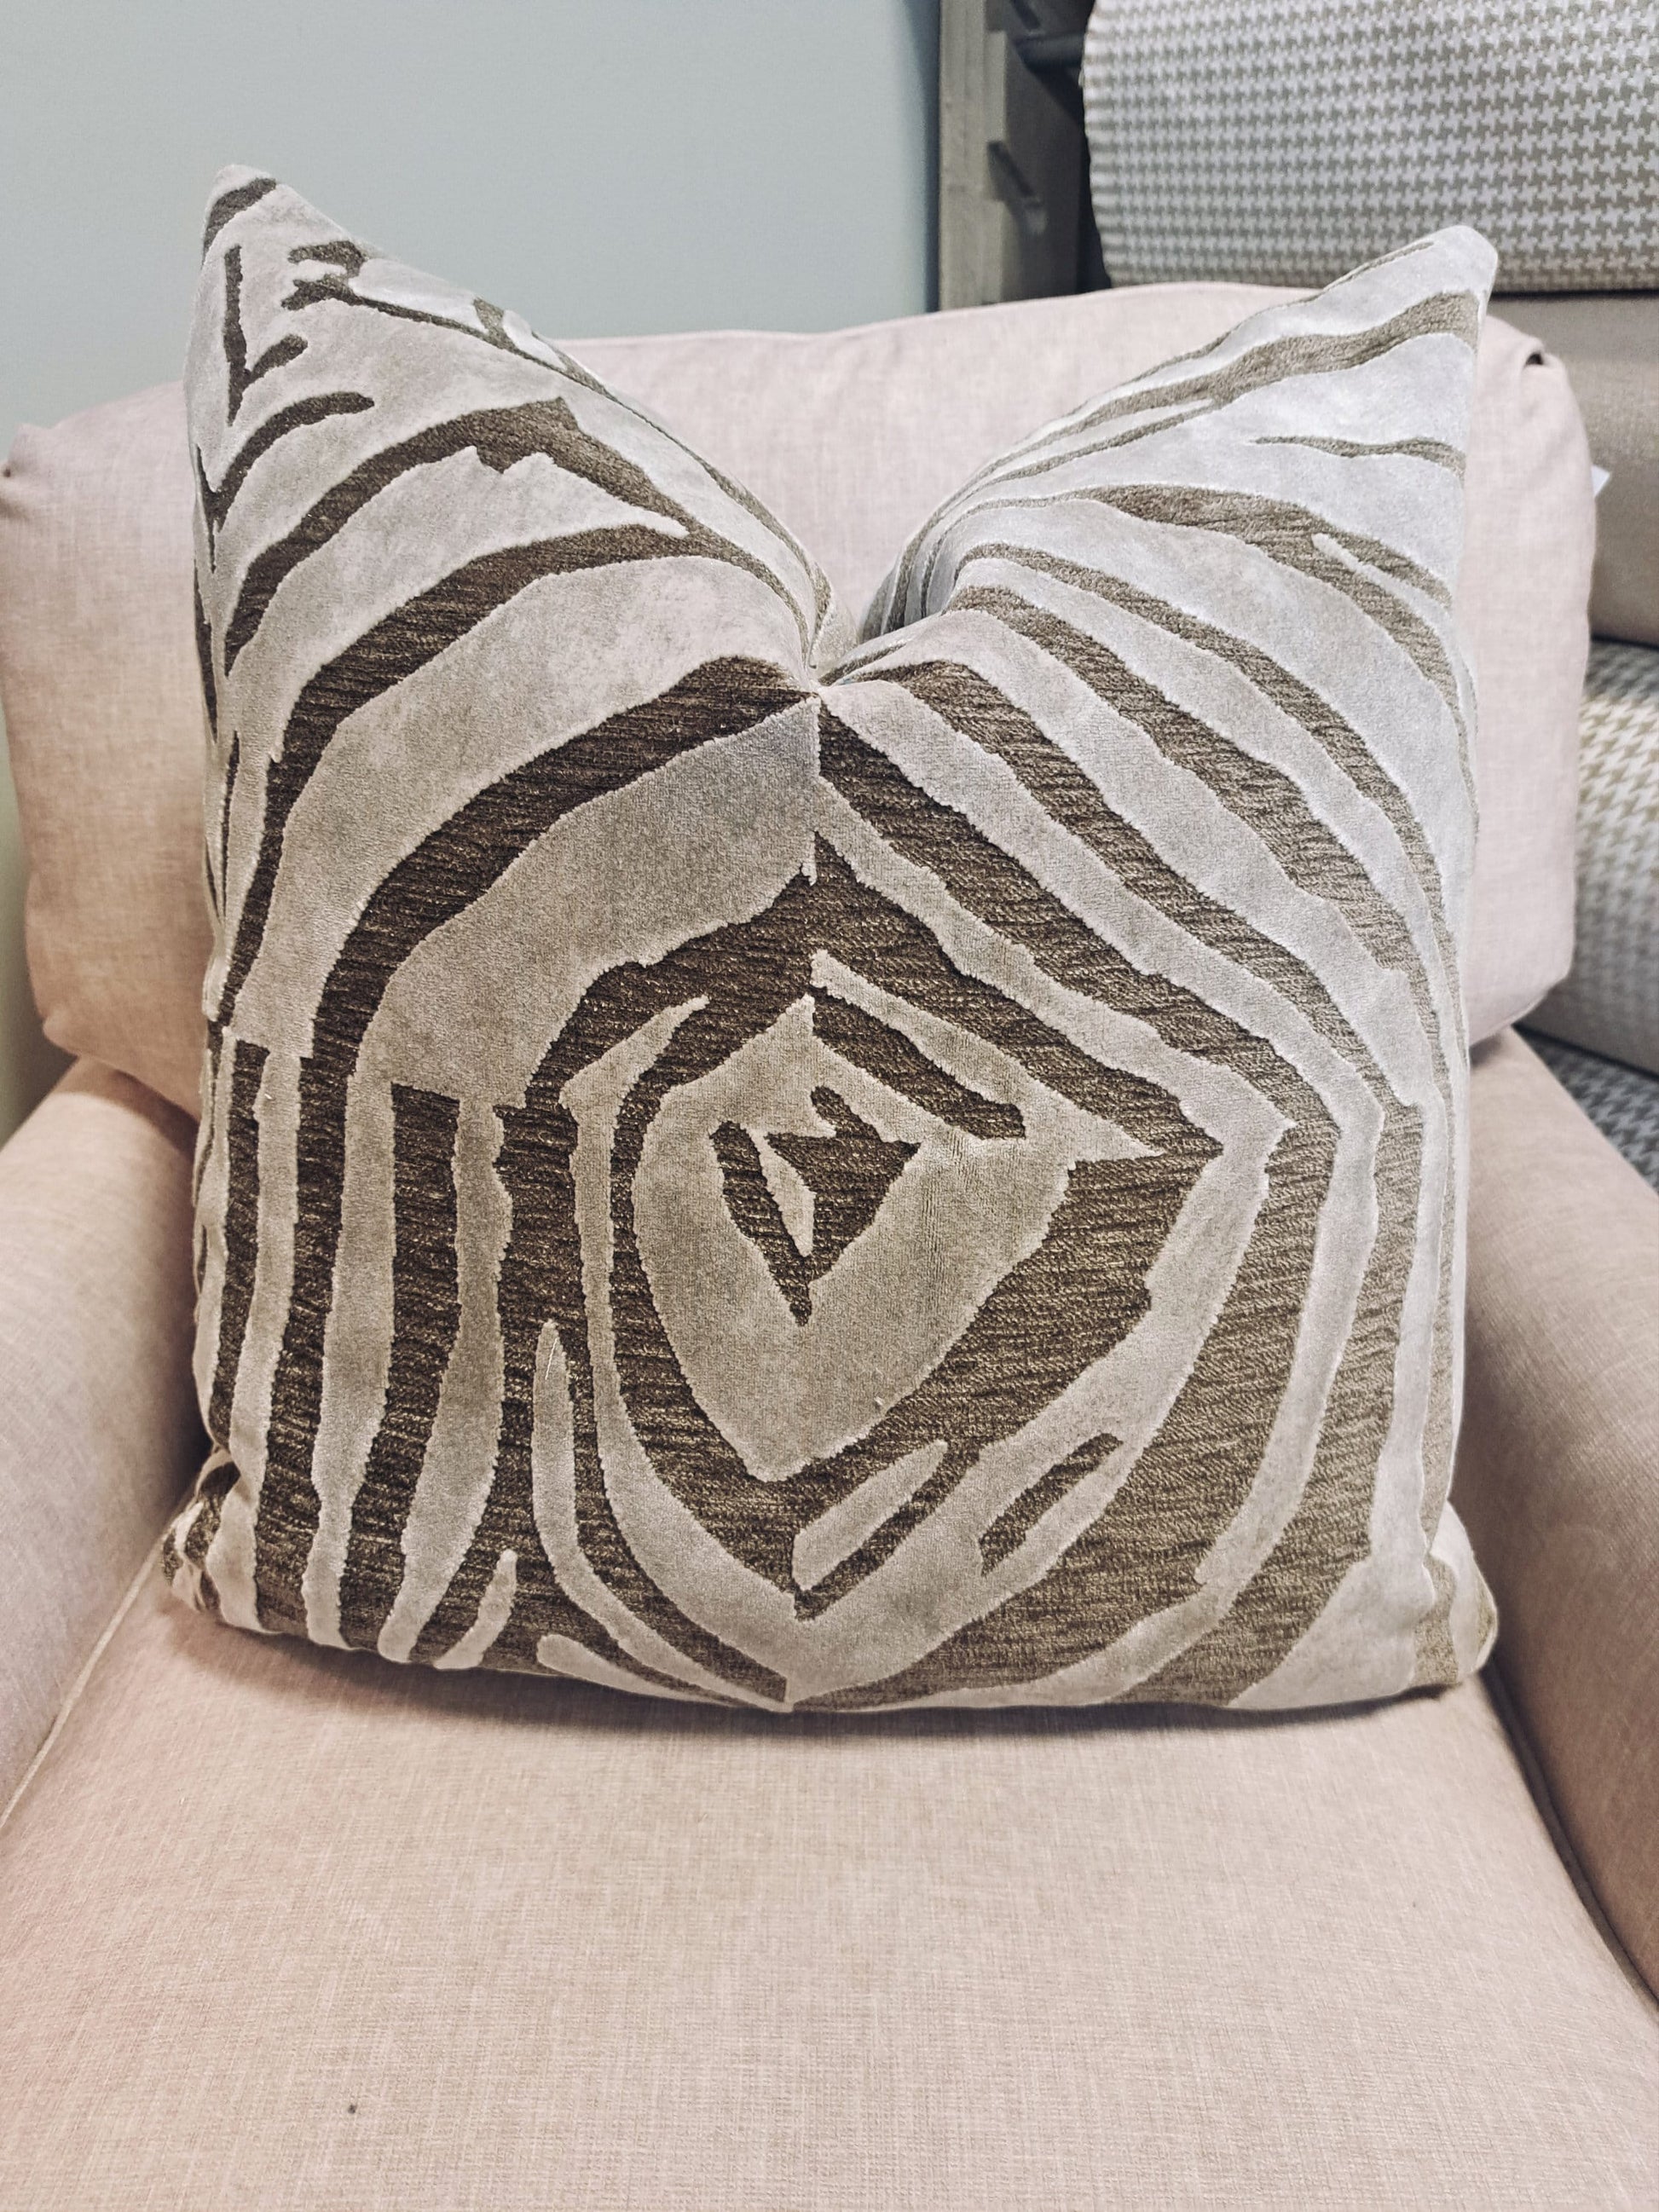 Zebra Velvet Pillow Cover Beige or Navy